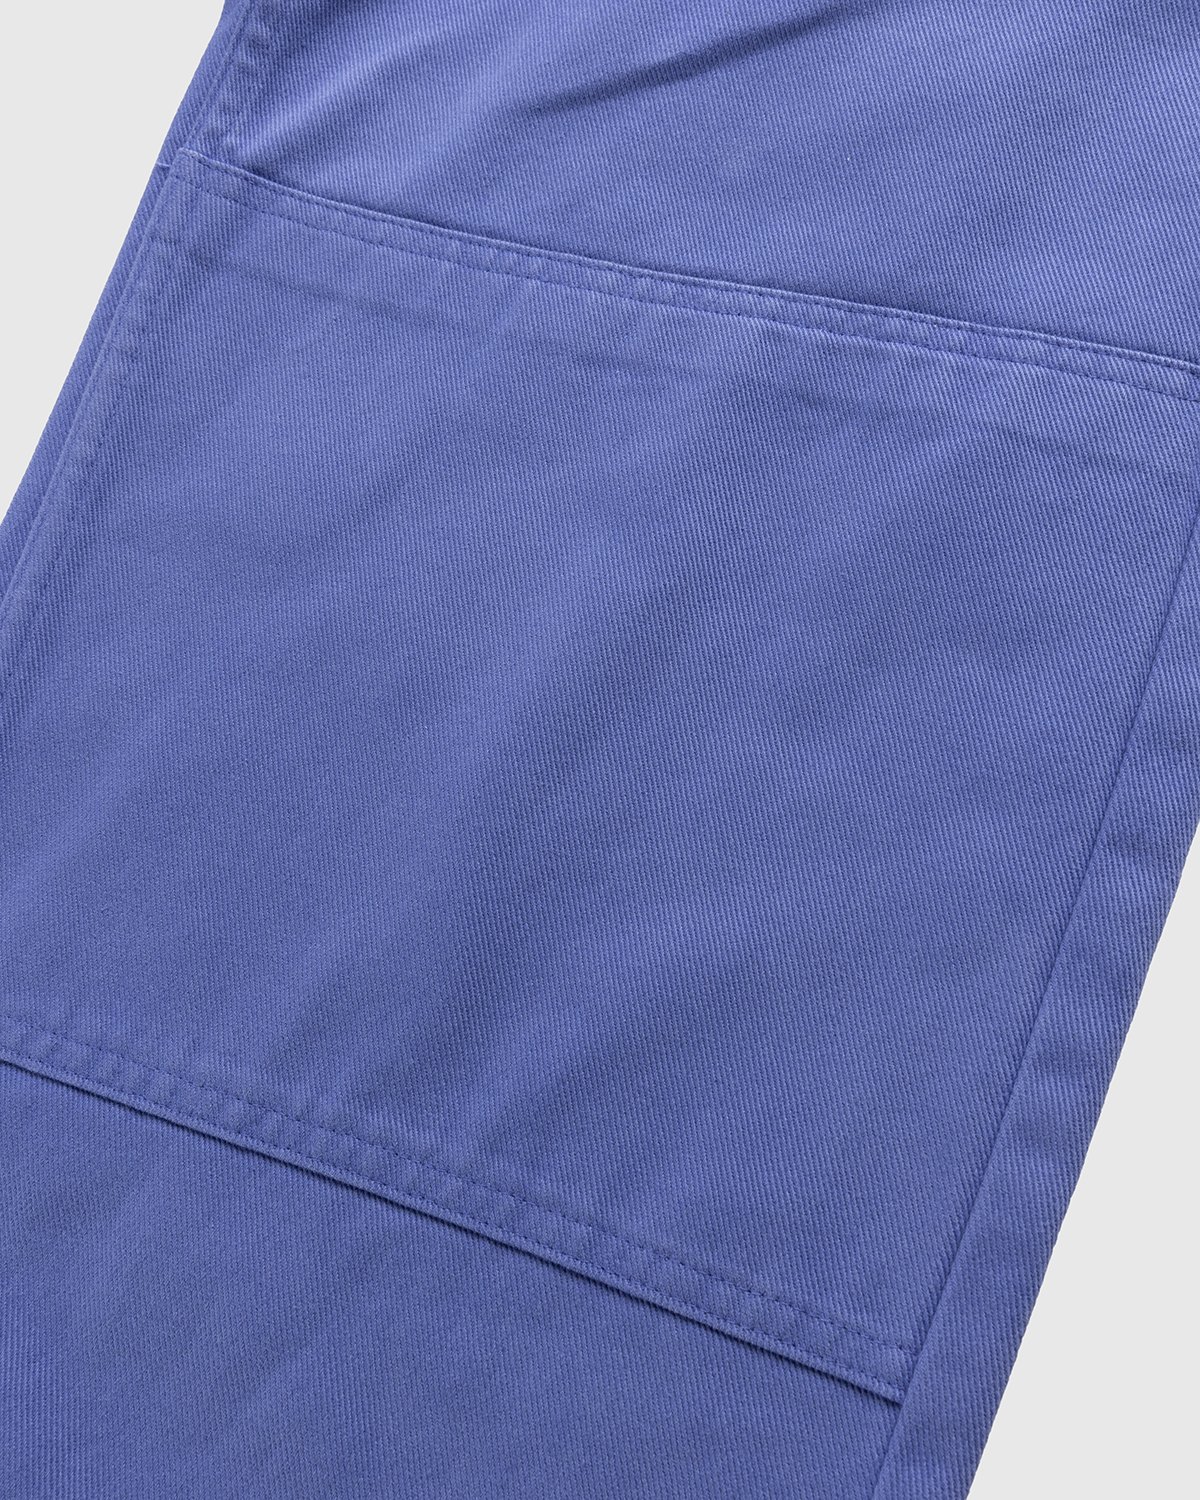 Heron Preston x Calvin Klein - Mens Straight Leg Utility Pant Amparo Blue - Clothing - Blue - Image 6